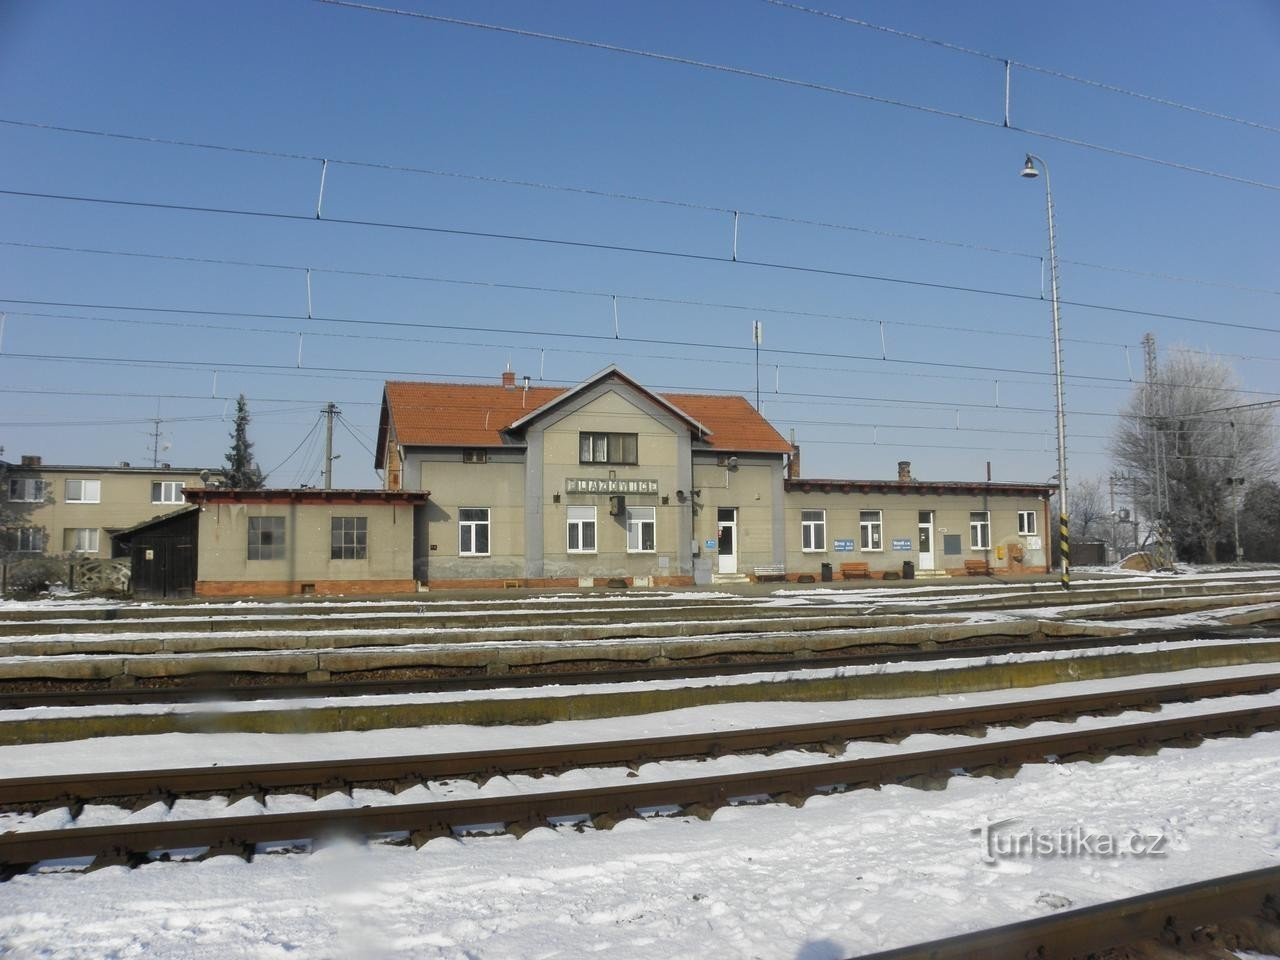 Calea ferată Blažovice - 29.1.2011